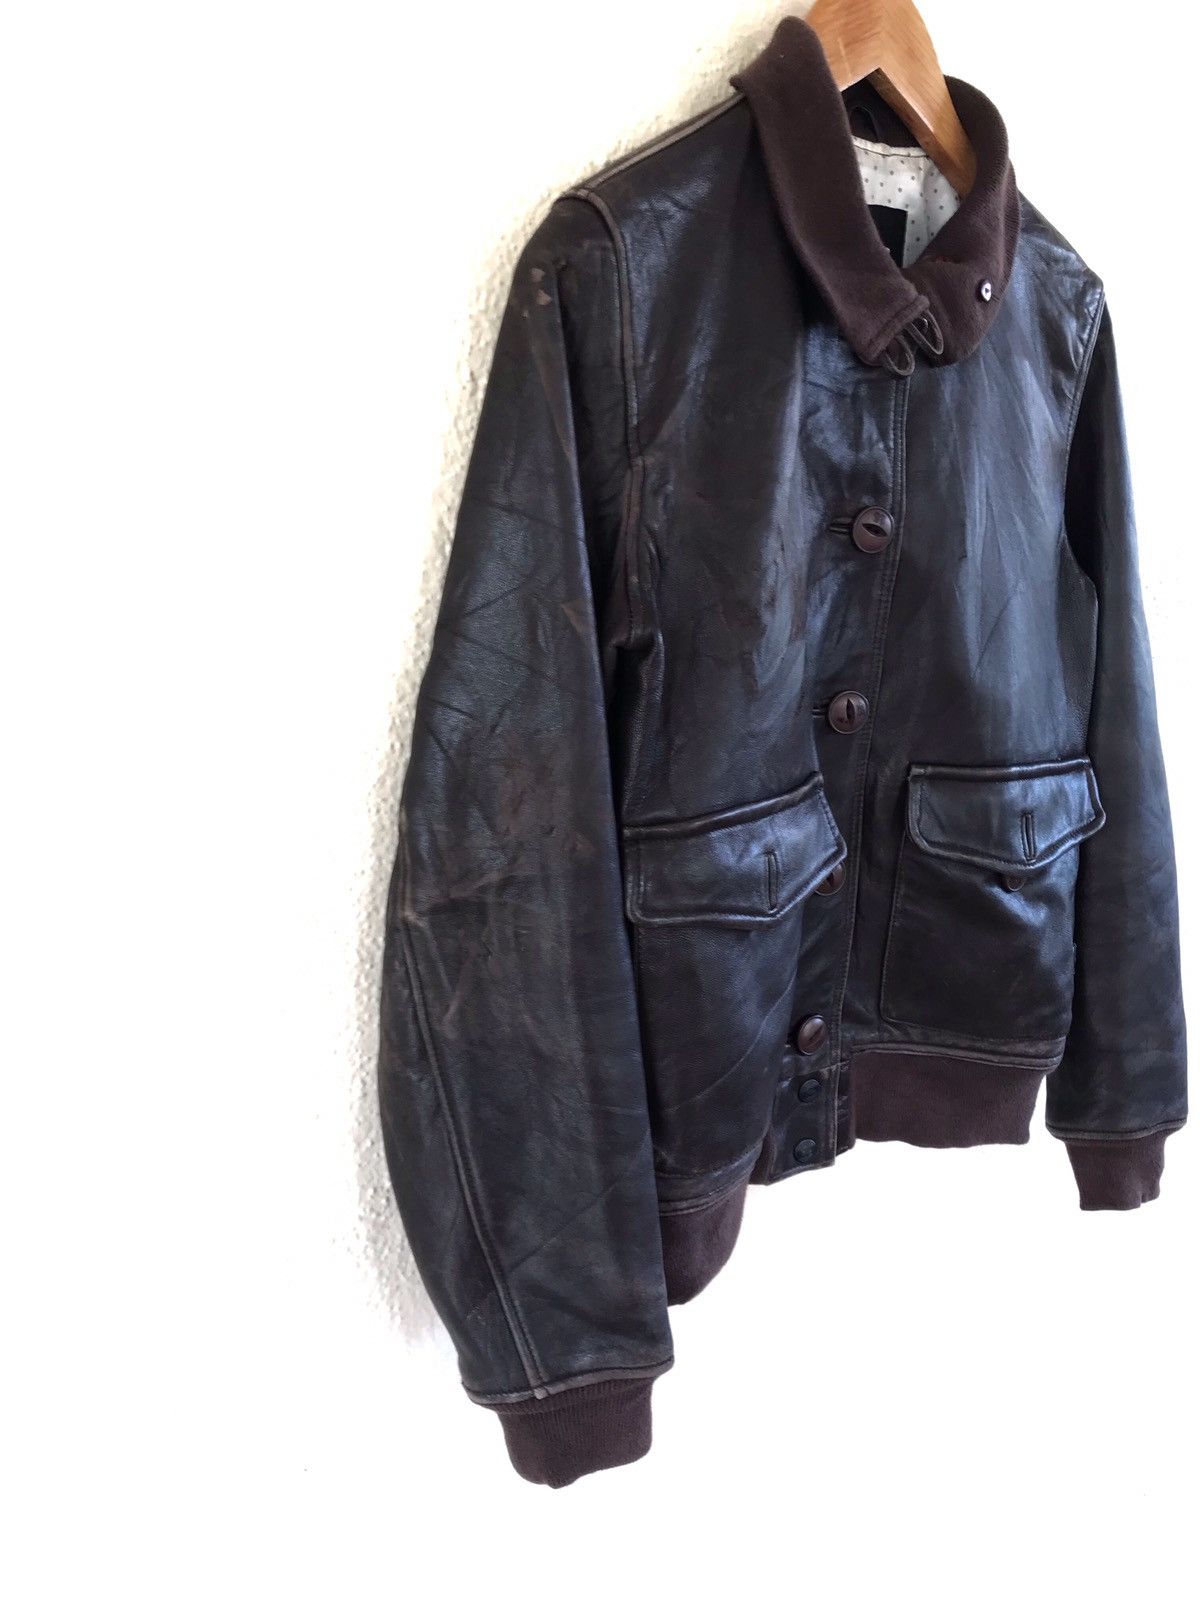 Neighborhood Leather Jacket - 3